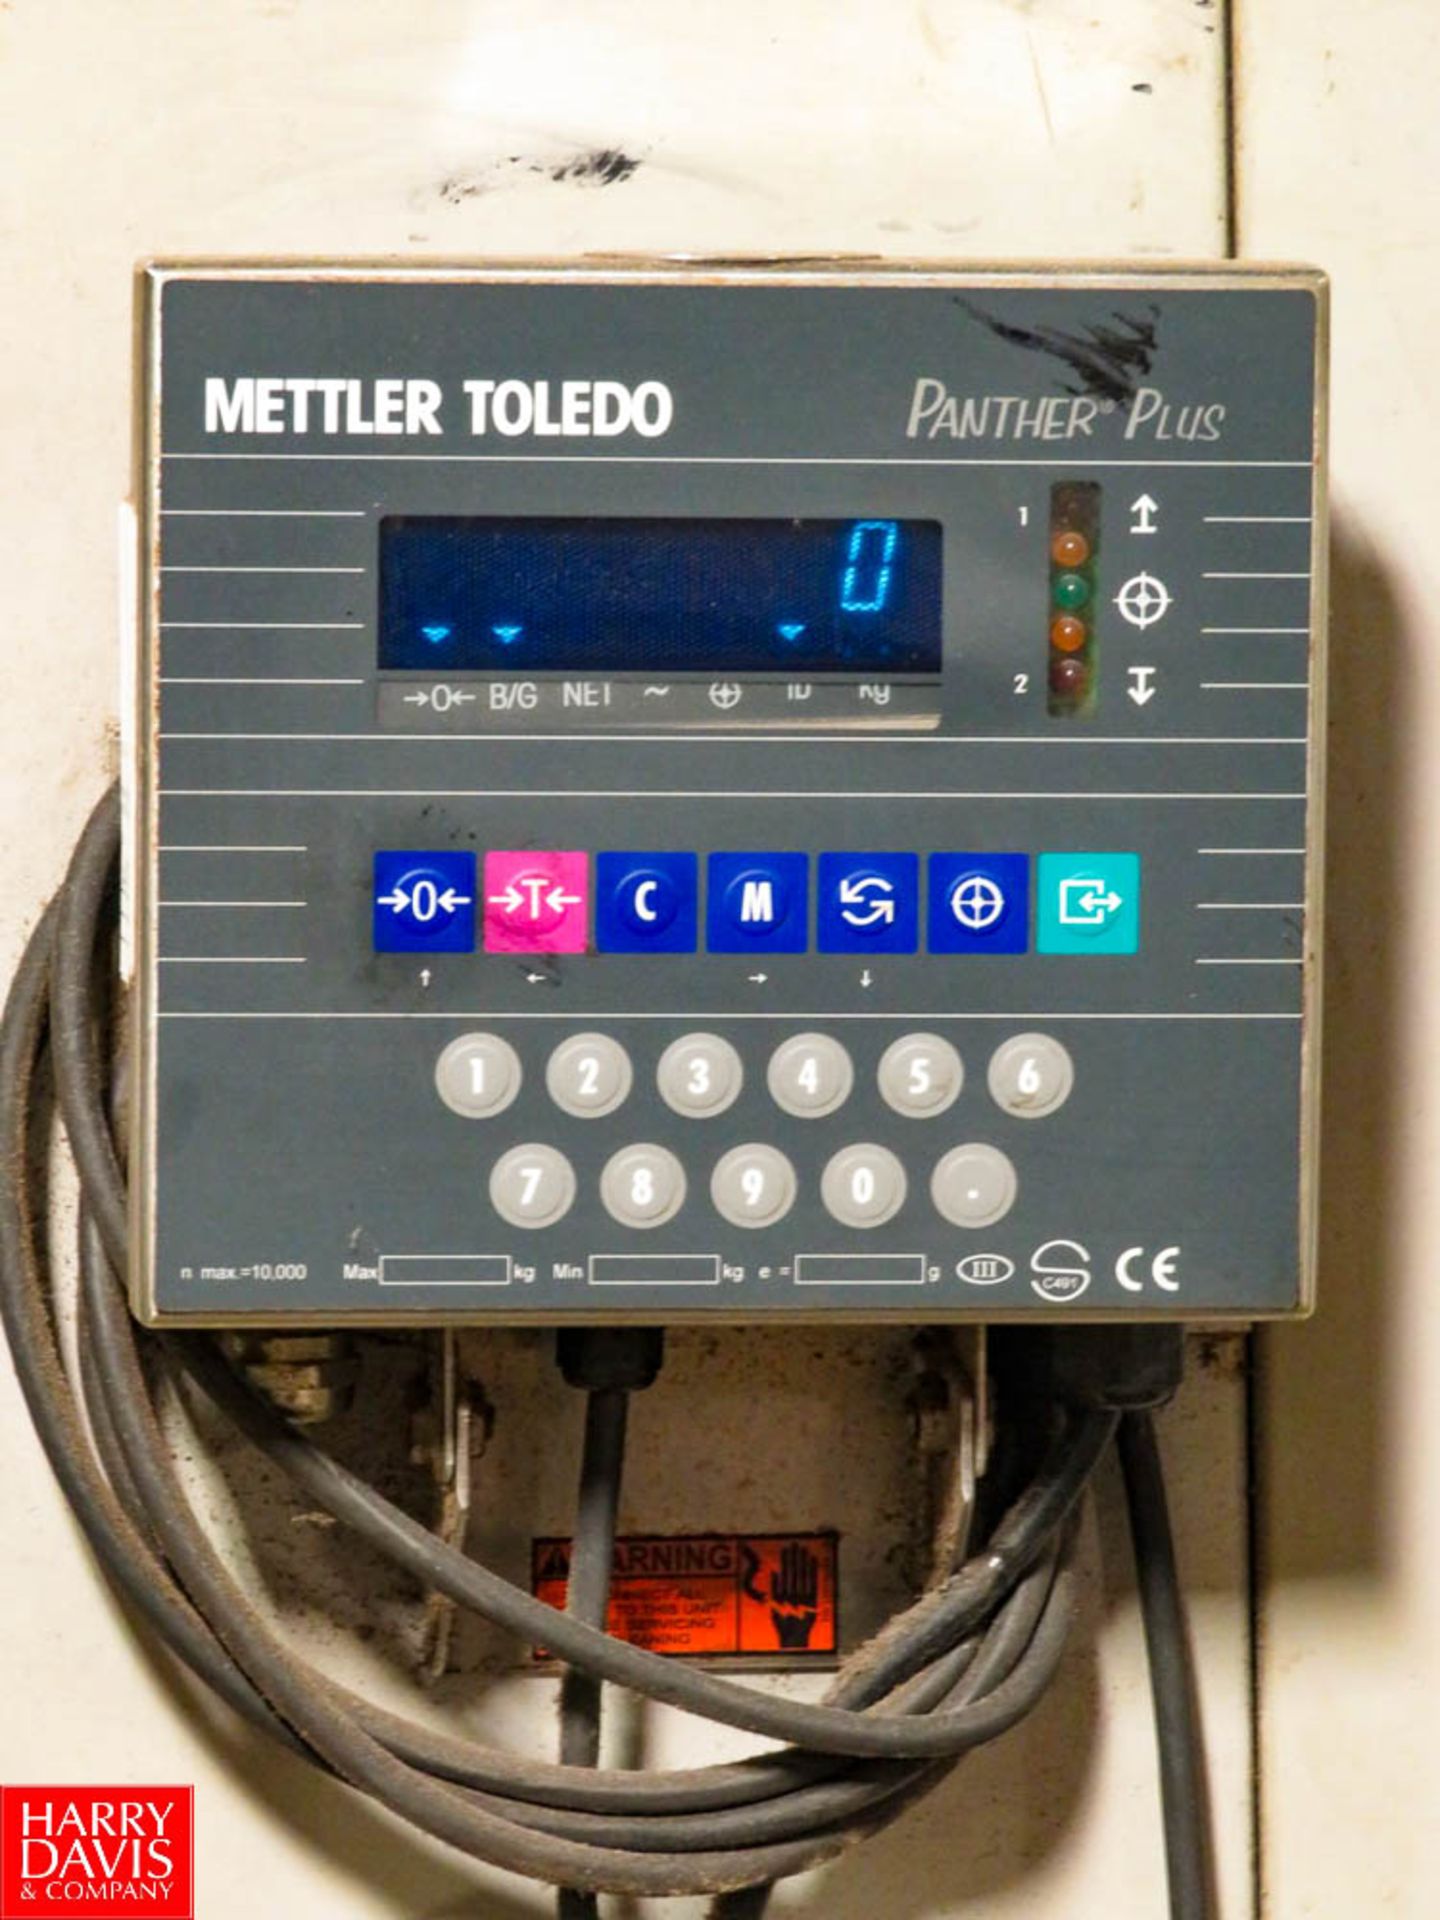 Mettler Toledo Floor Scale 4' X 4', with Mettler Toledo Display Rigging Fee: $100 - Image 2 of 2